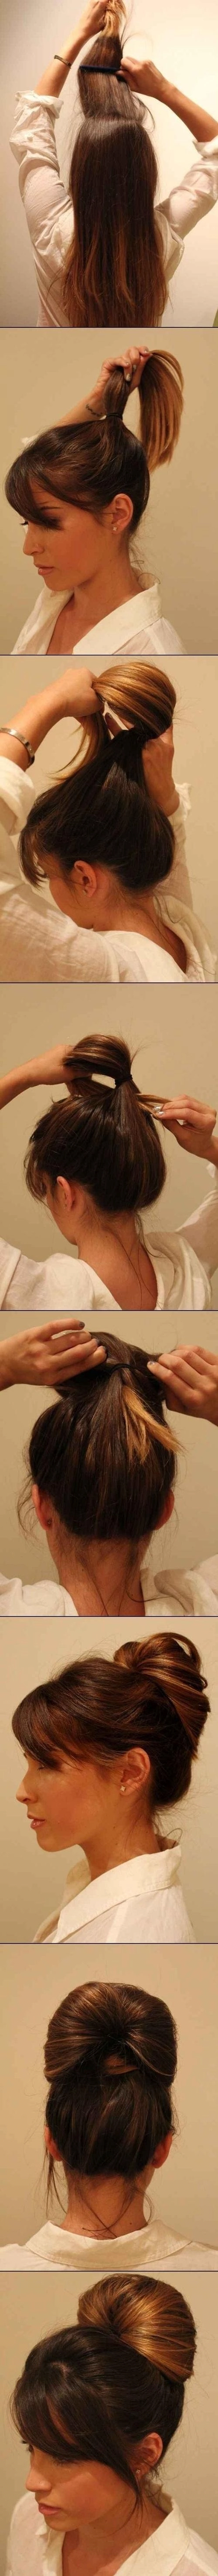 Hướng dẫn làm tóc búi đẹp giản dị cực dễ thương chống nóng hè hiệu quả